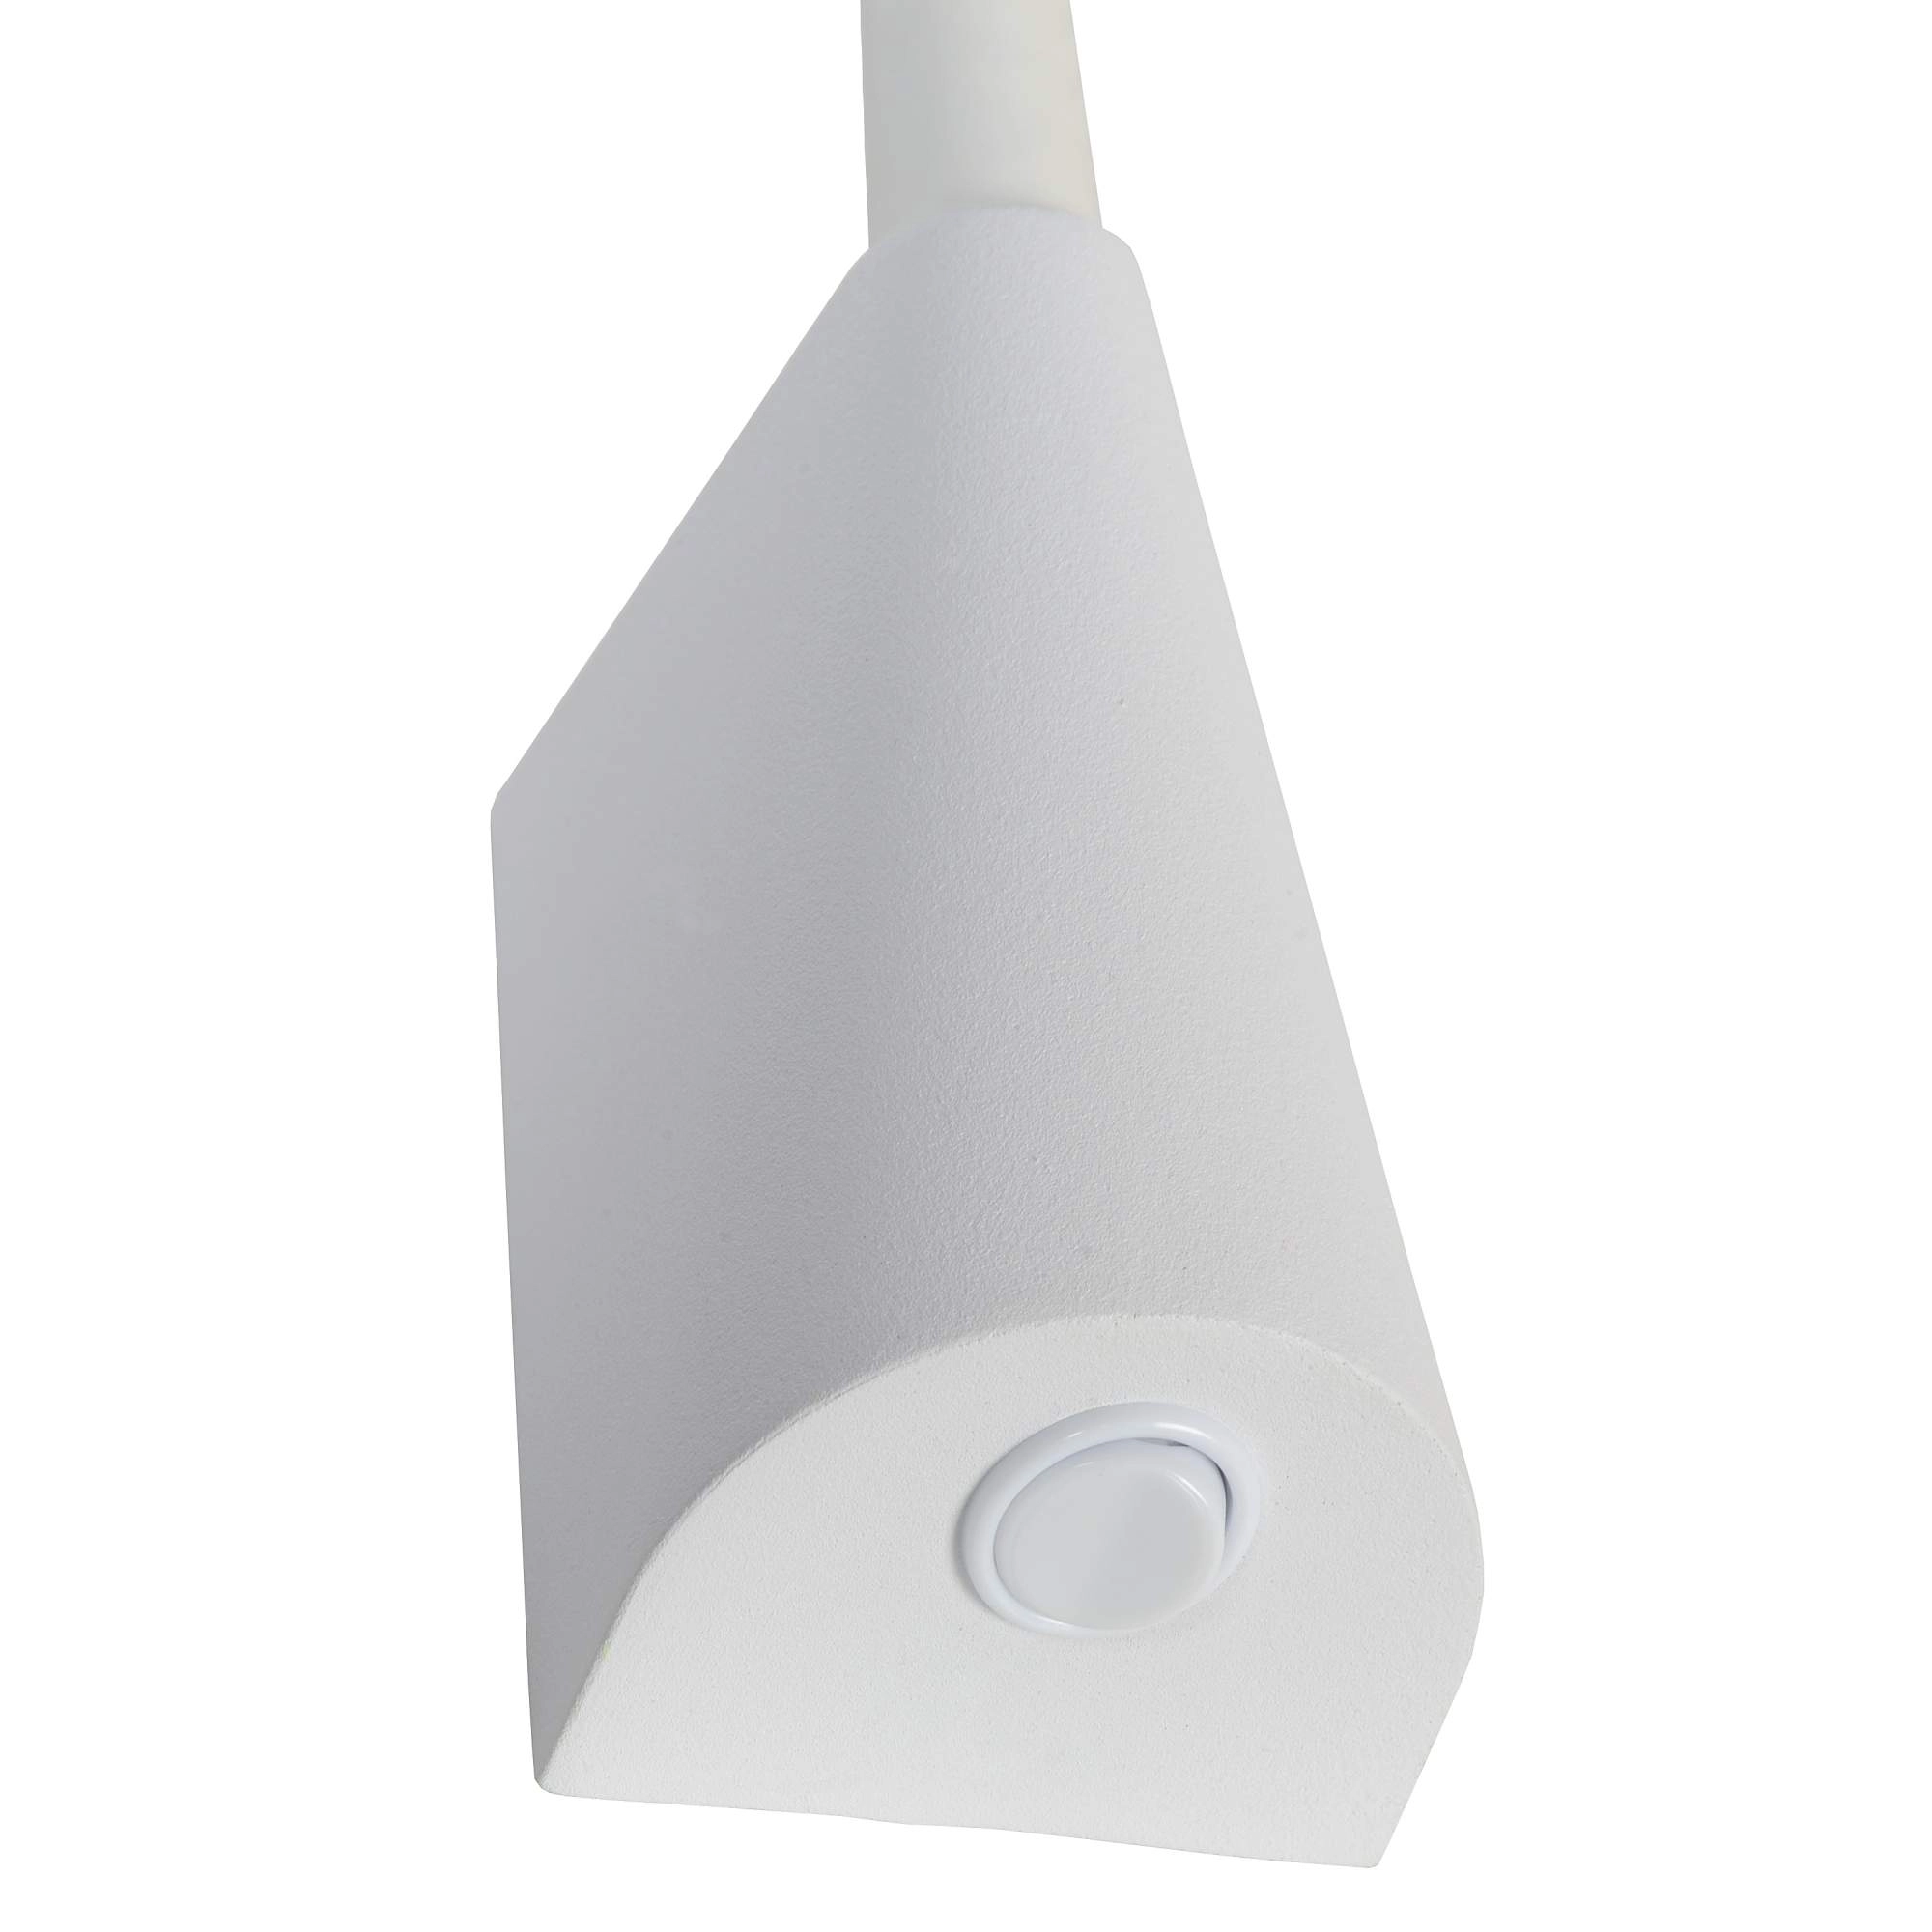 LU 18294/03/31 Lucide GALEN-LED - Bedside lamp - LED - 1x3W 3000K - White